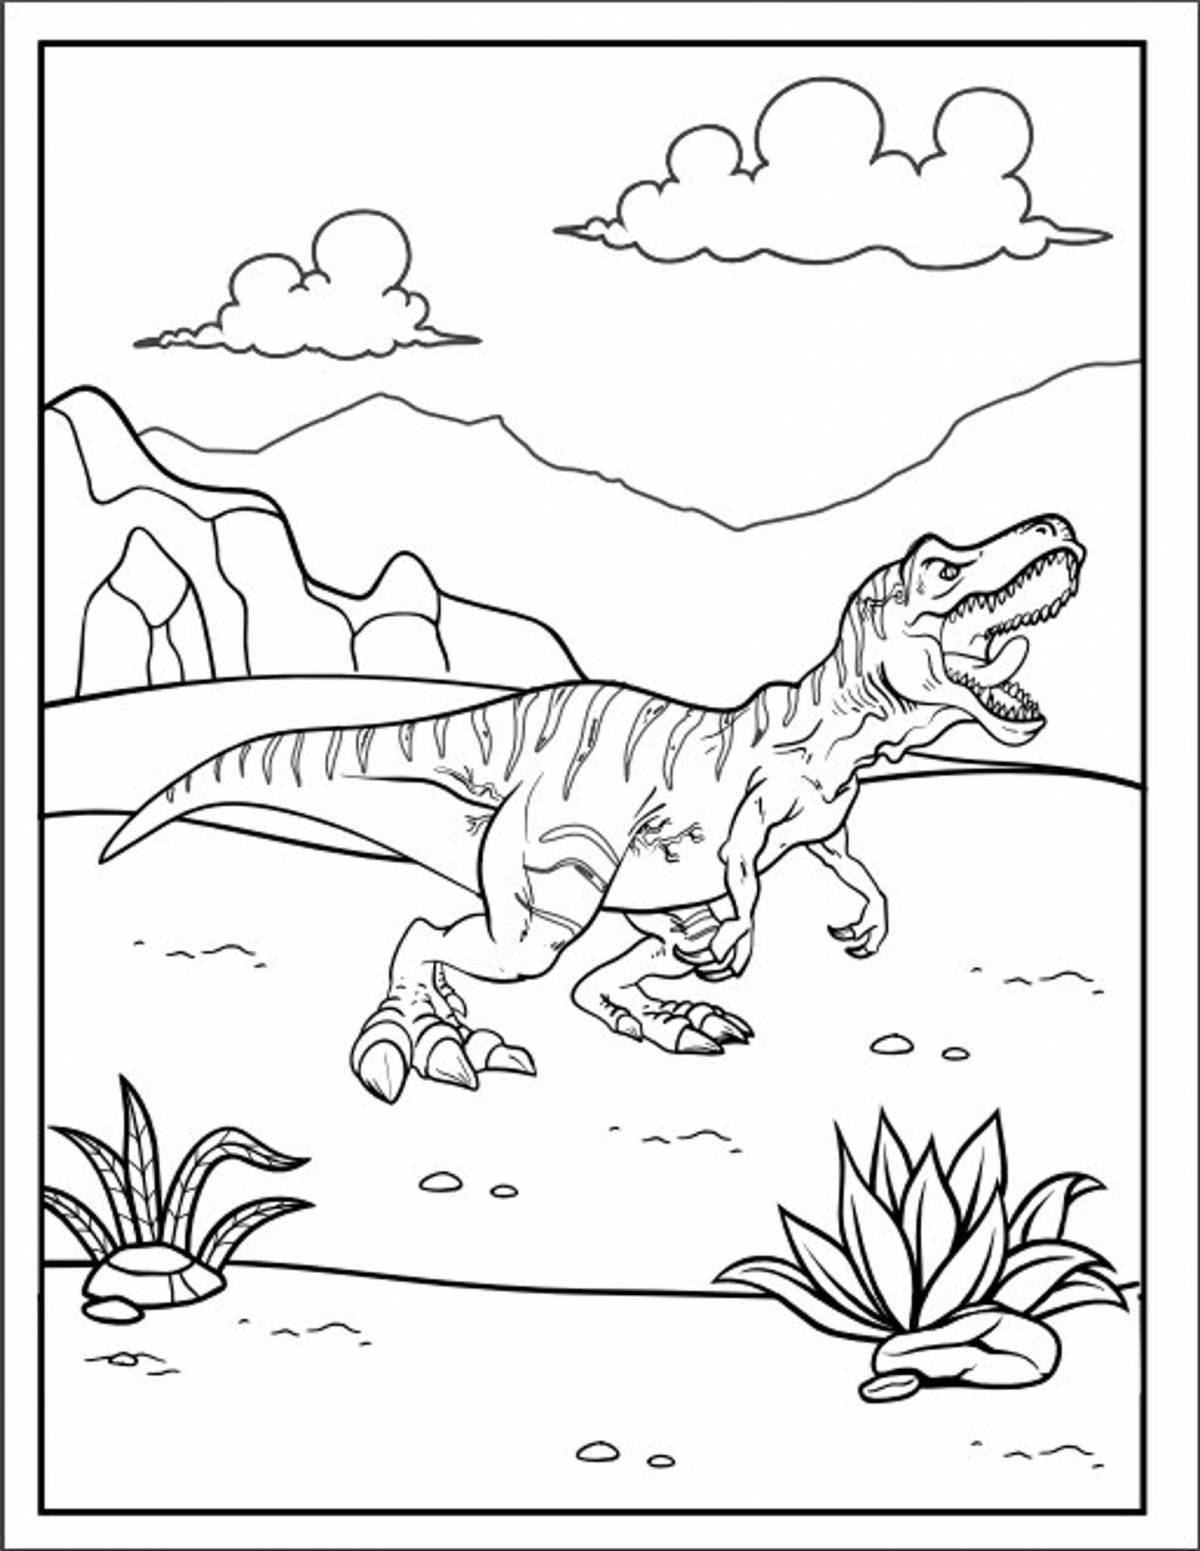 Colorful Baryonyx Dinosaur Coloring Page